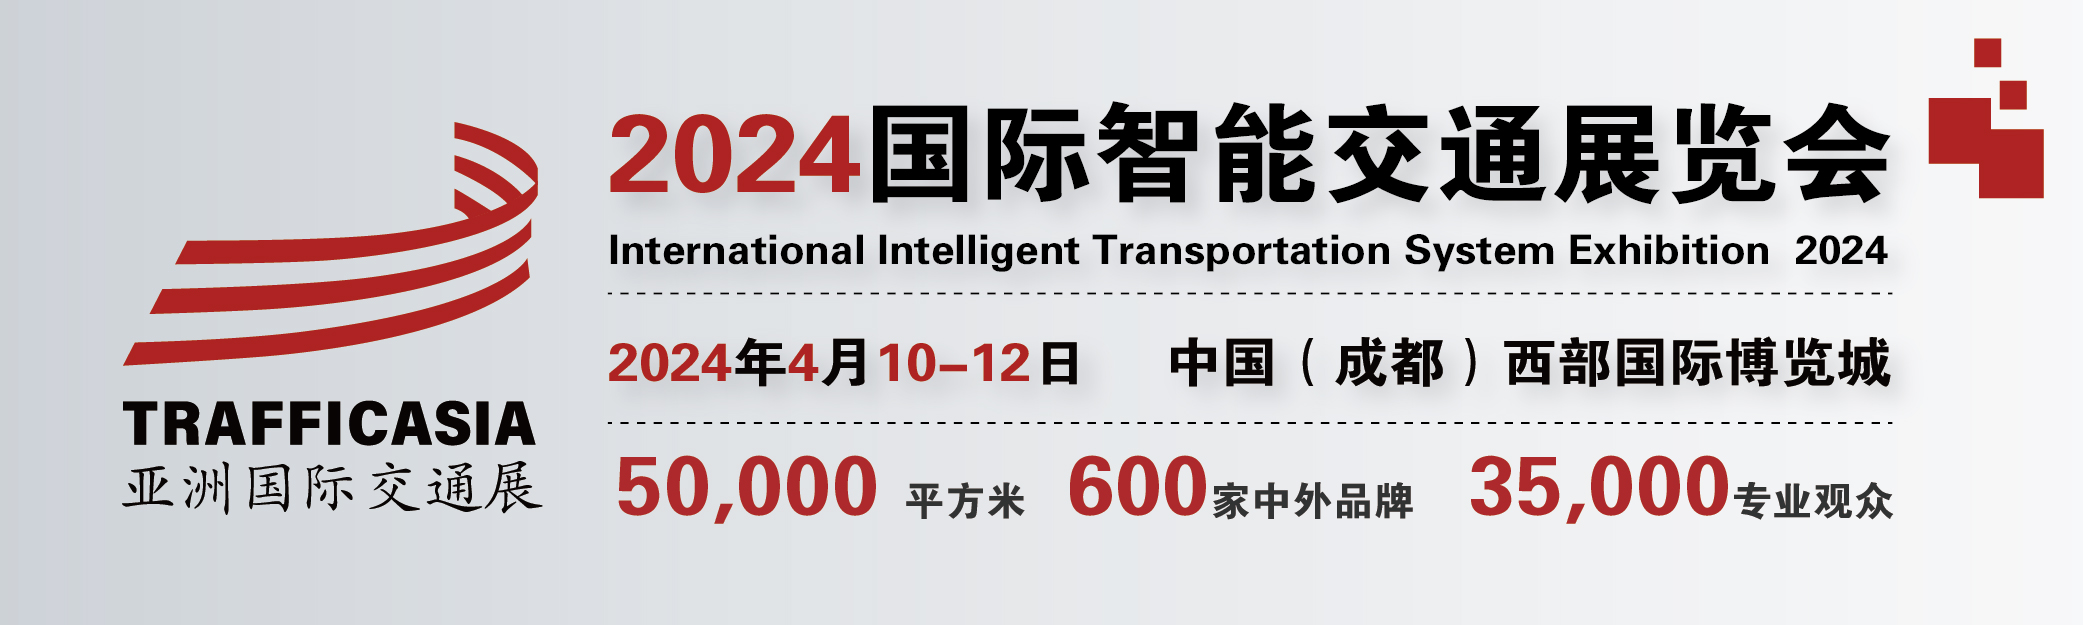 2024国际智能交通展览会